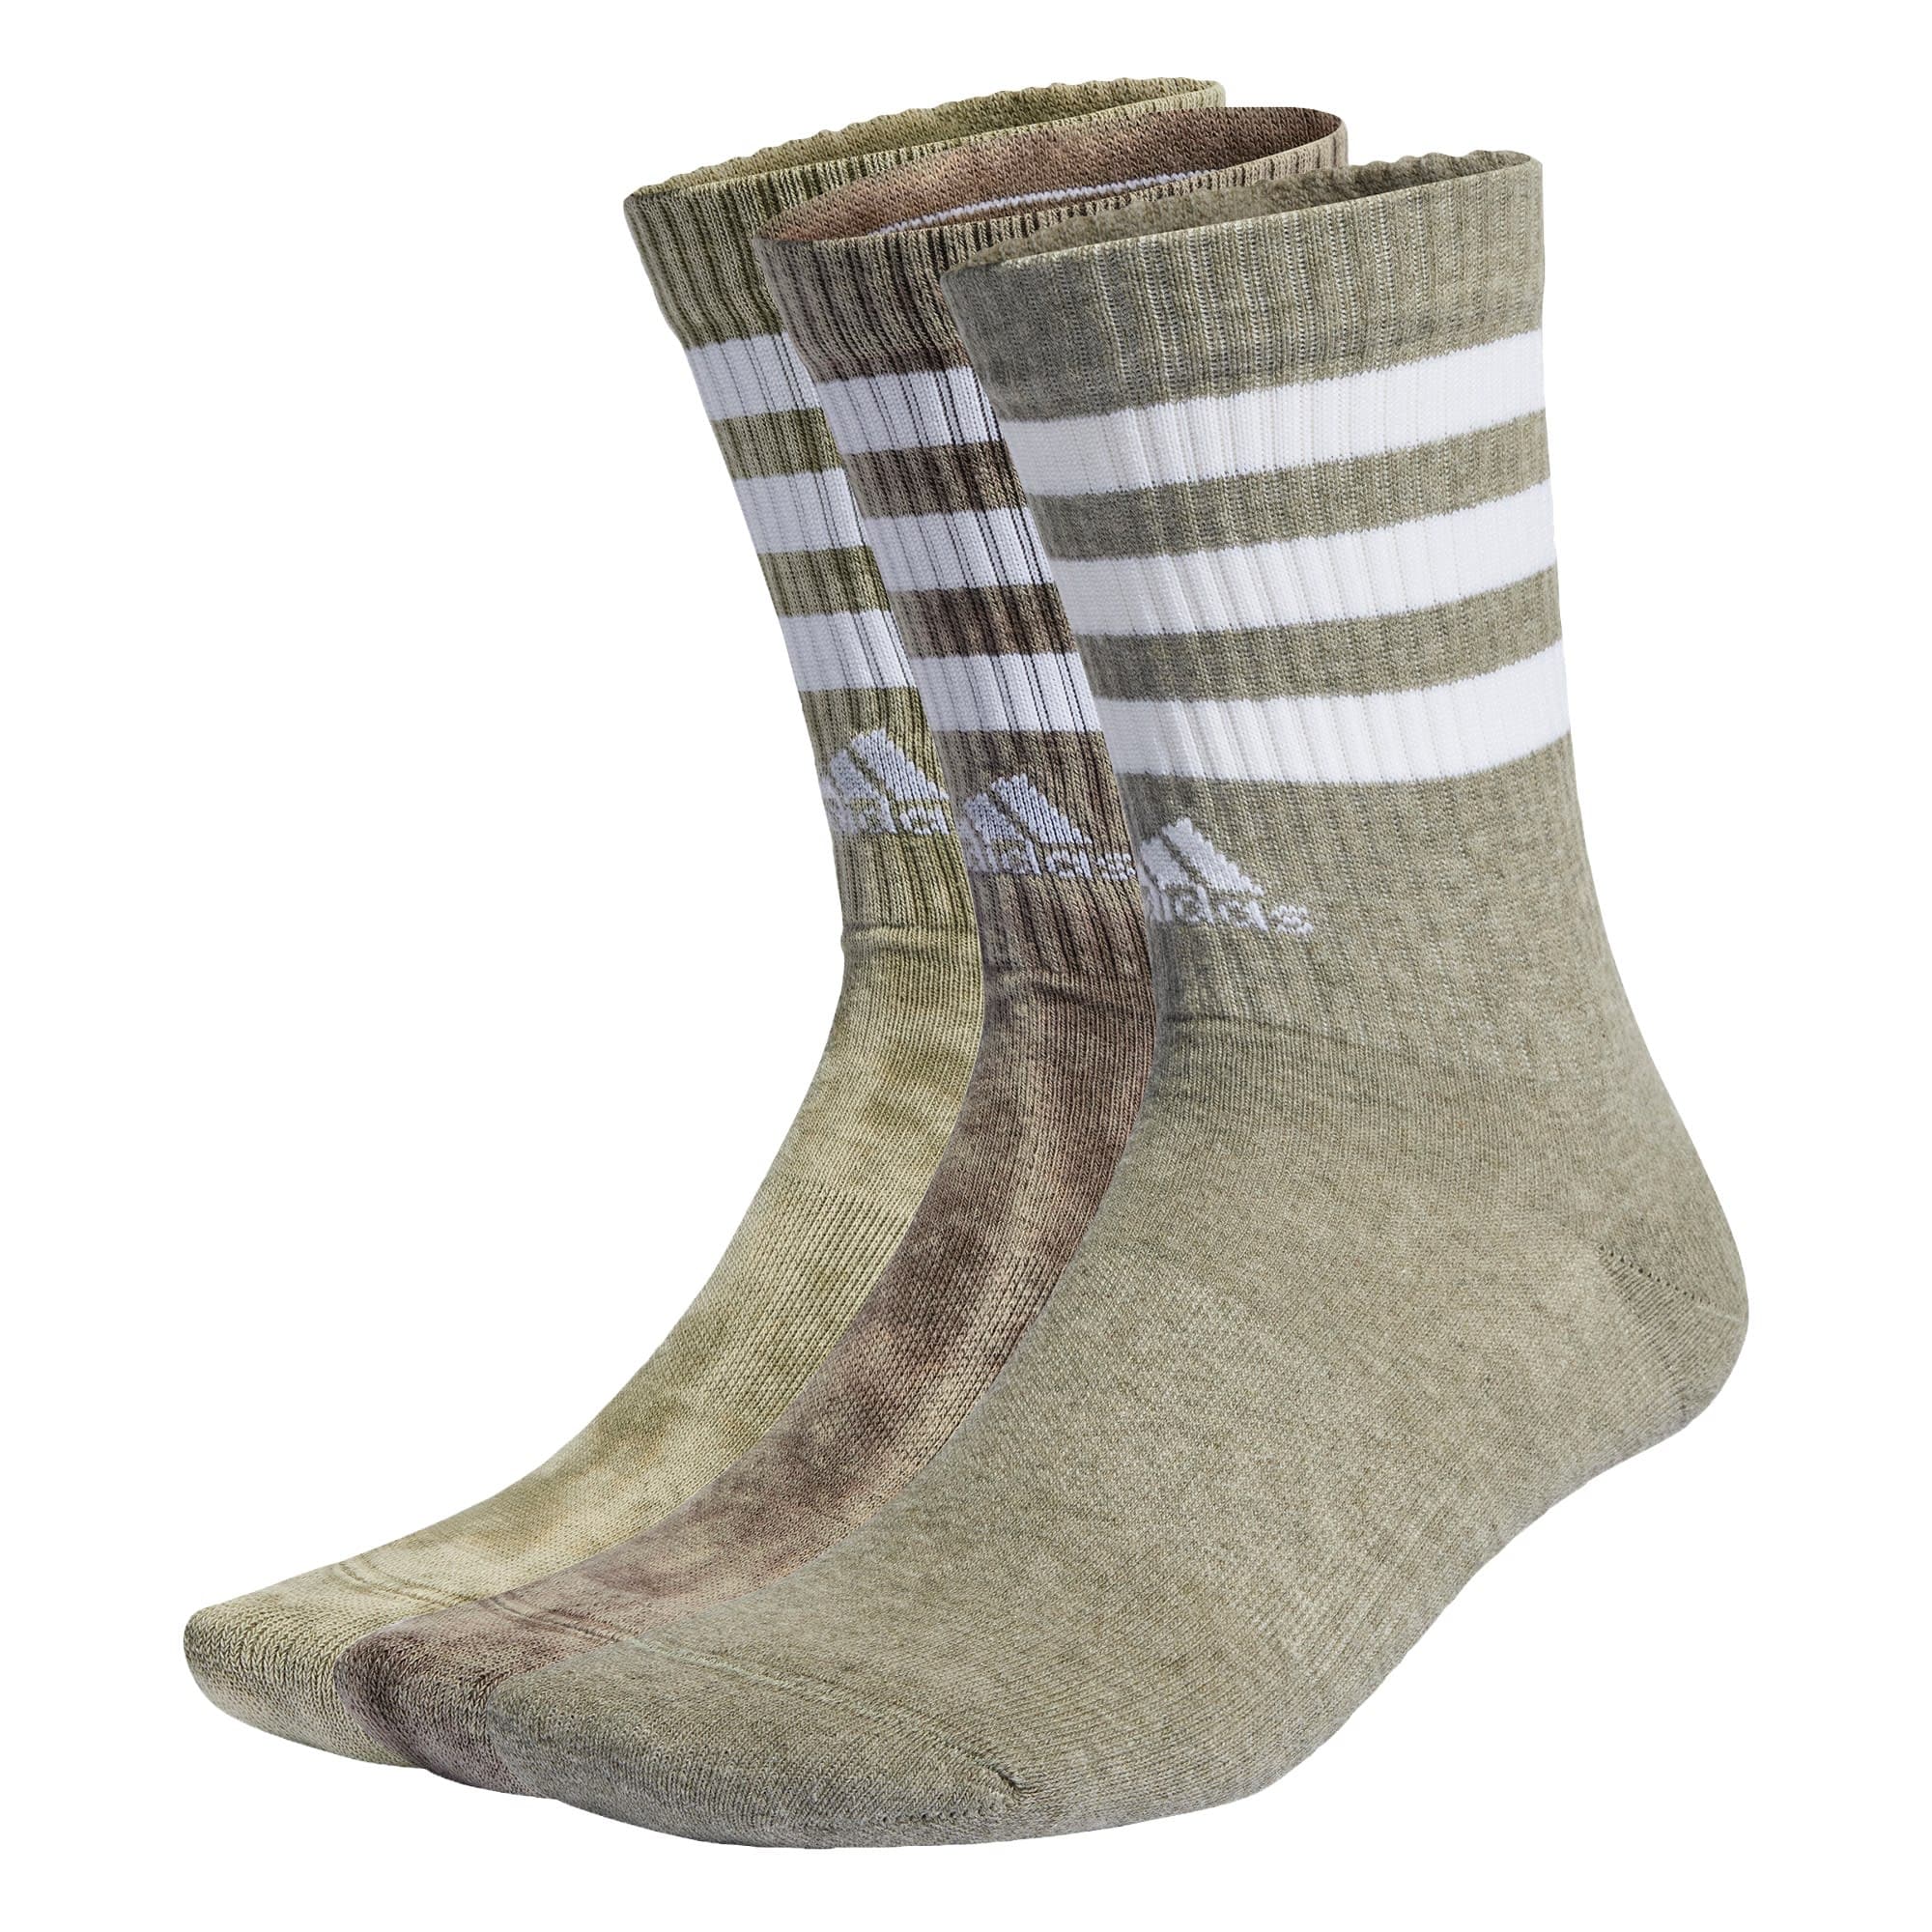 ADIDAS SPORTSWEAR Sportinės kojinės rusvai žalia / nendrių spalva / balta